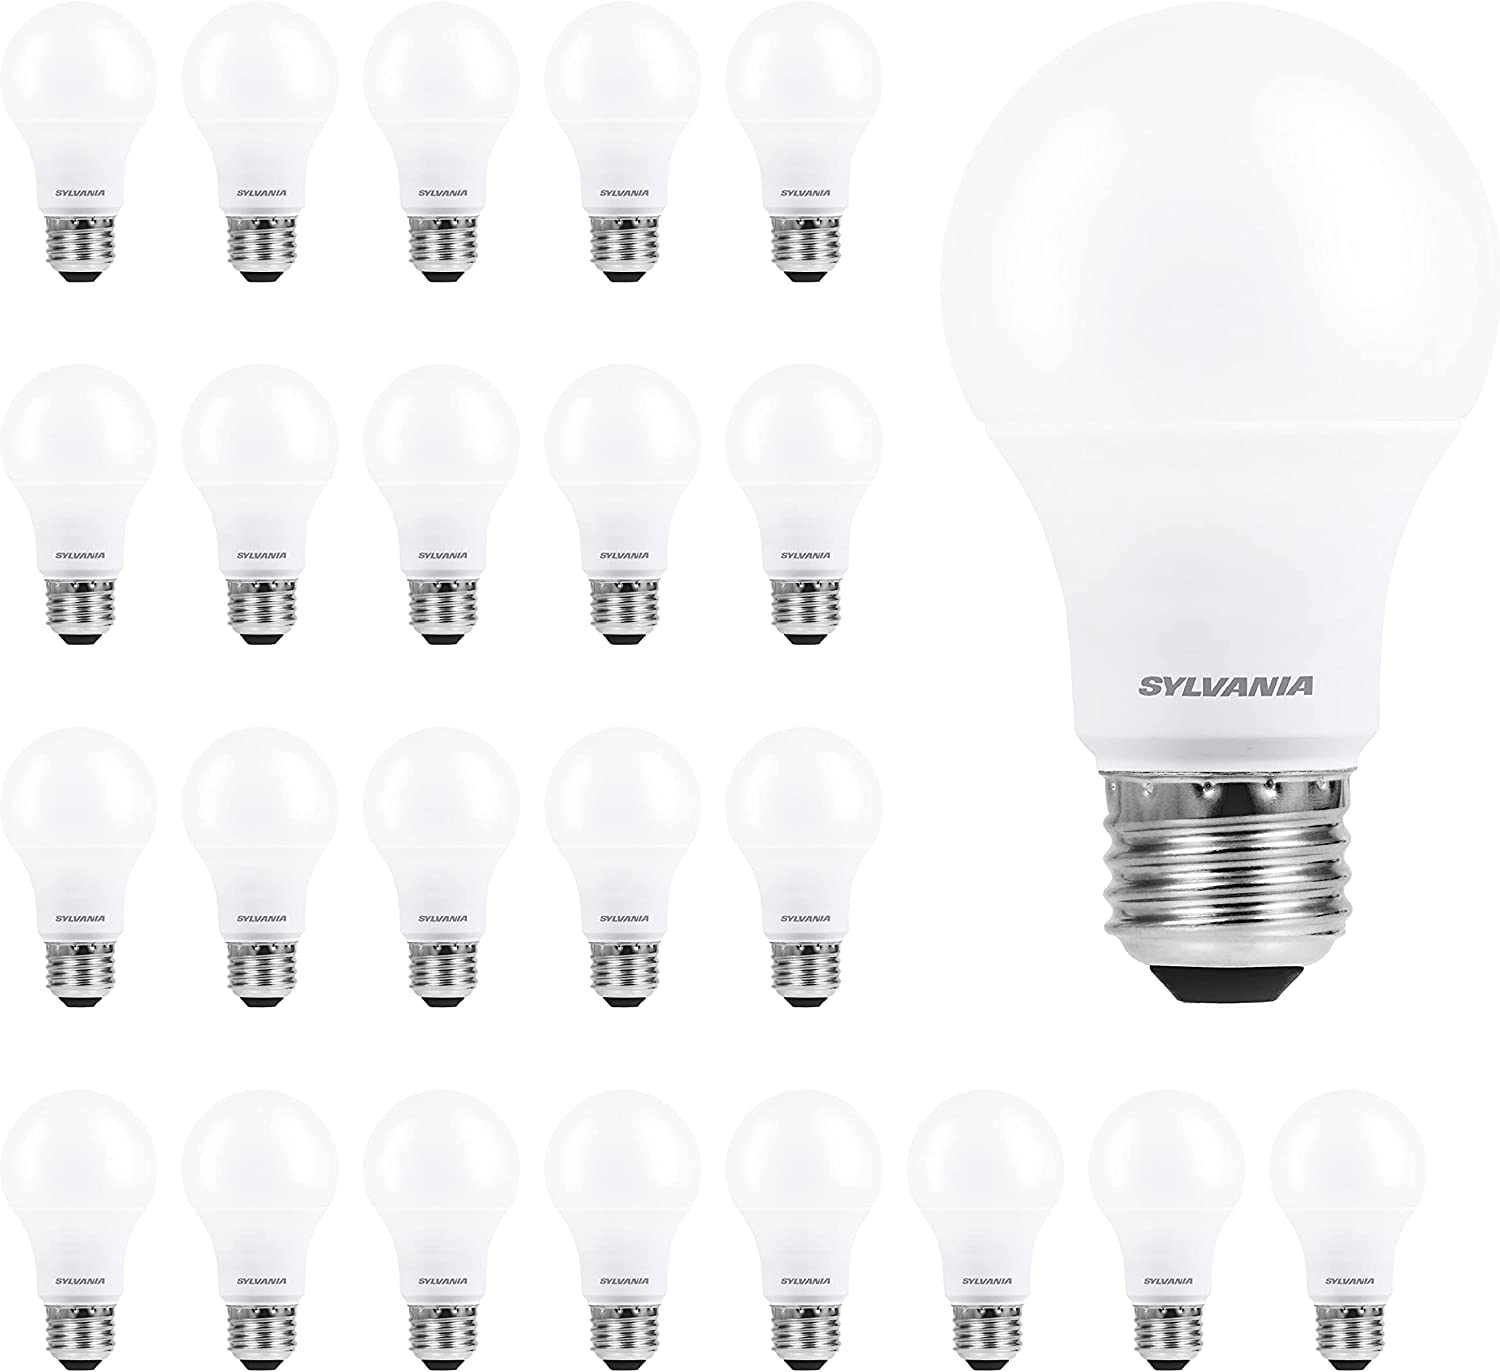 SYLVANIA ECO LED A19 Light Bulb, 60W Equivalent, [...]